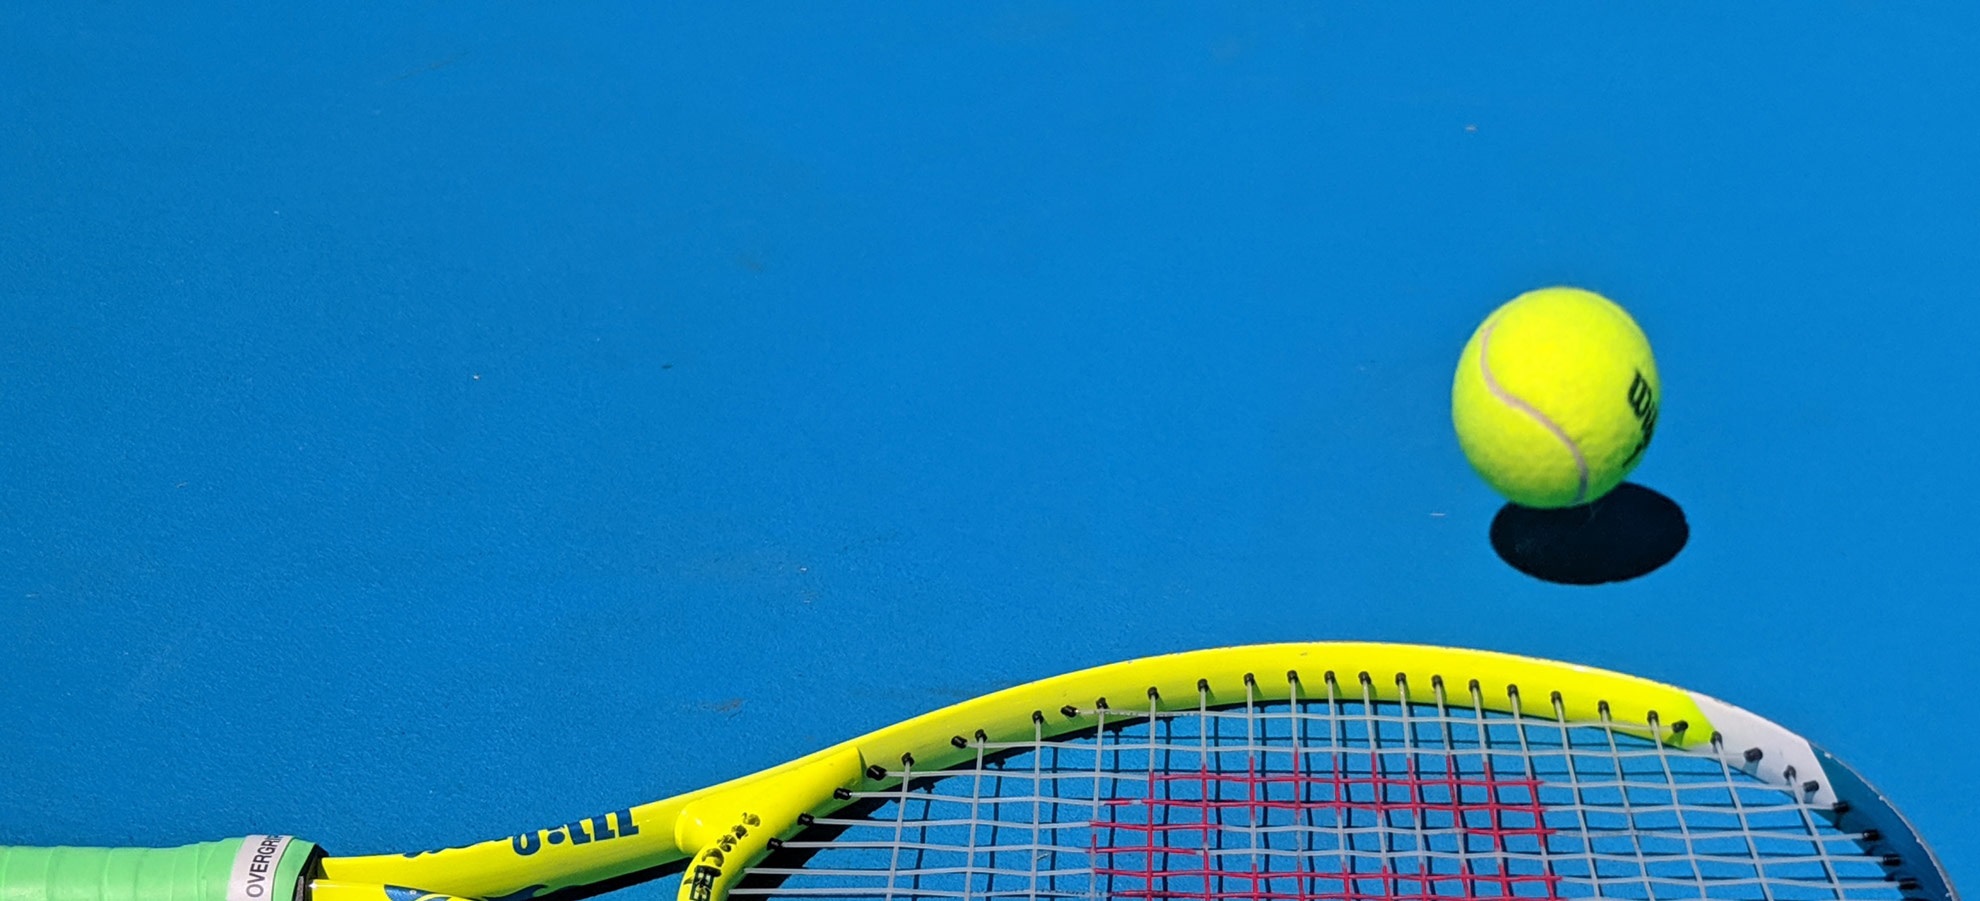 Tennis/Pickleball Sportlovet 50%